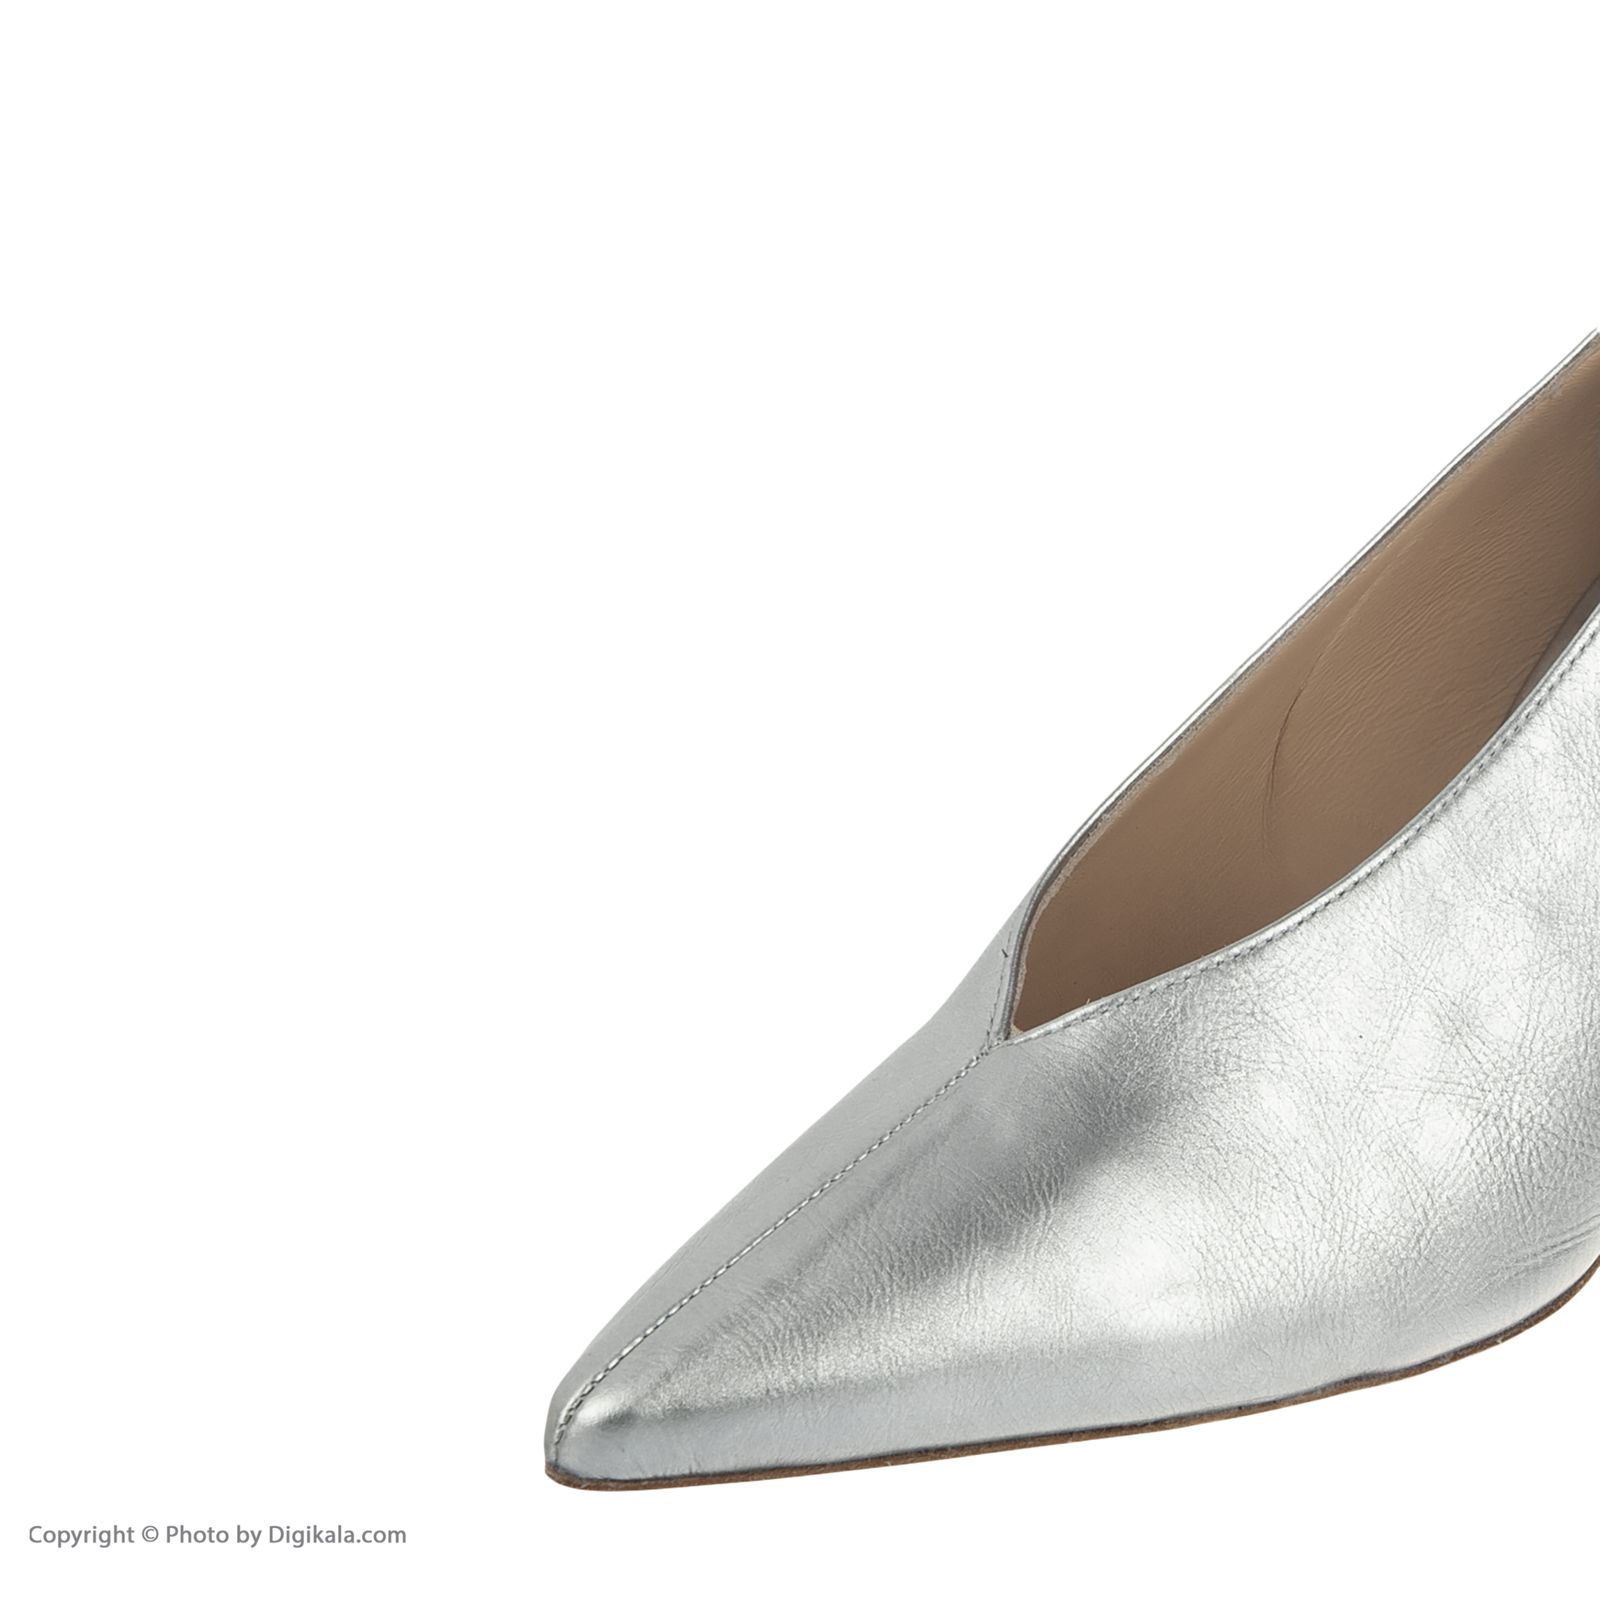 کفش زنانه هوگل مدل 5-107711-7300 - نقره ای - 4